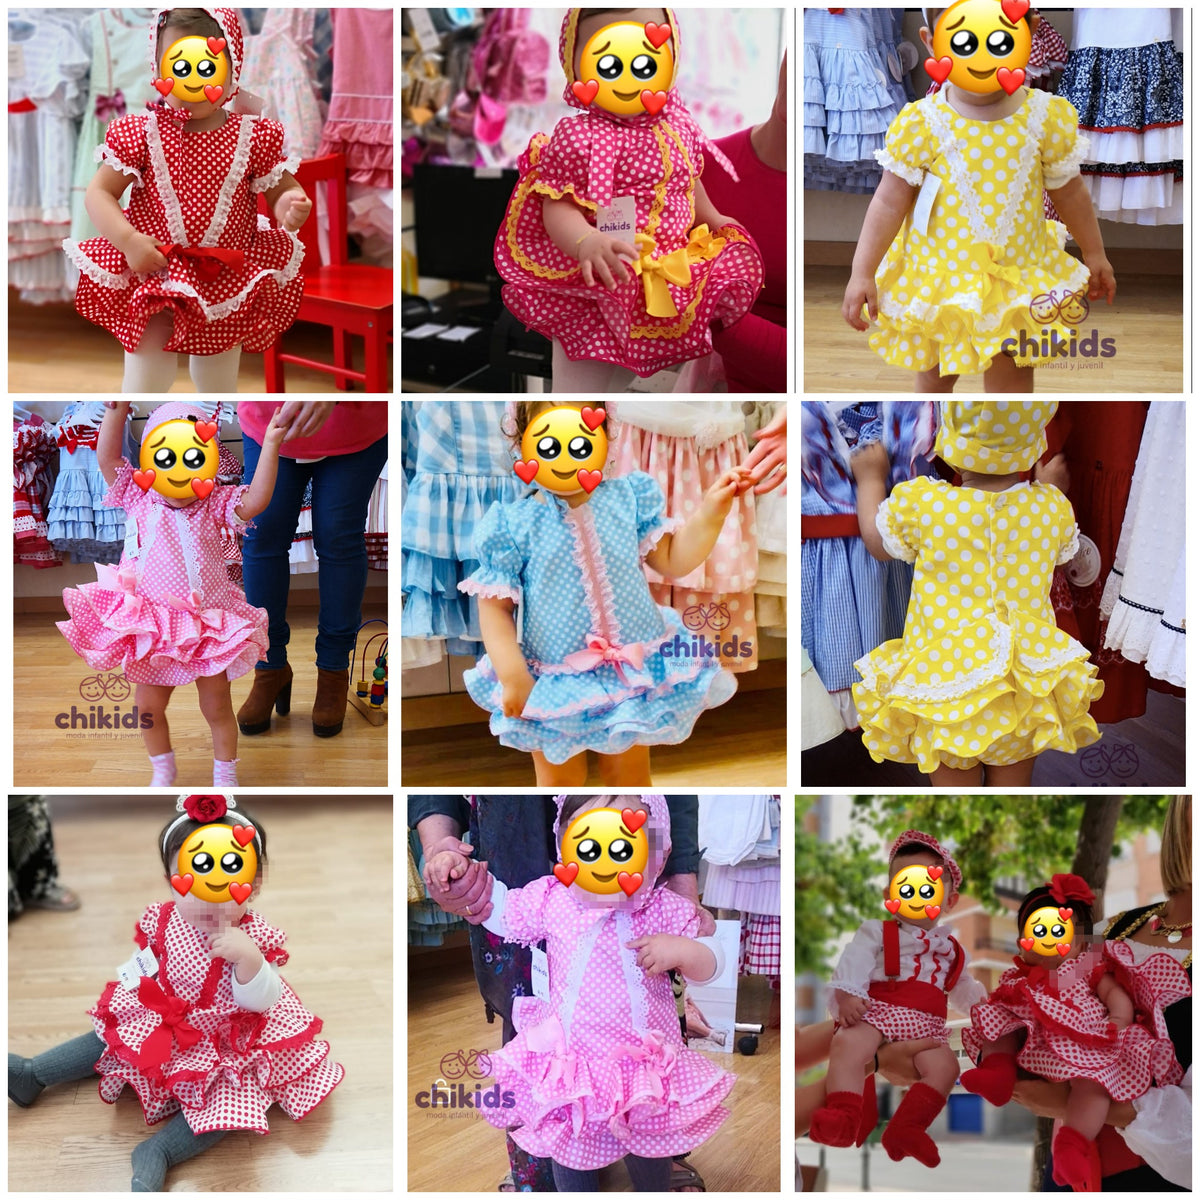 Moda Flamenca – Chikids moda infantil